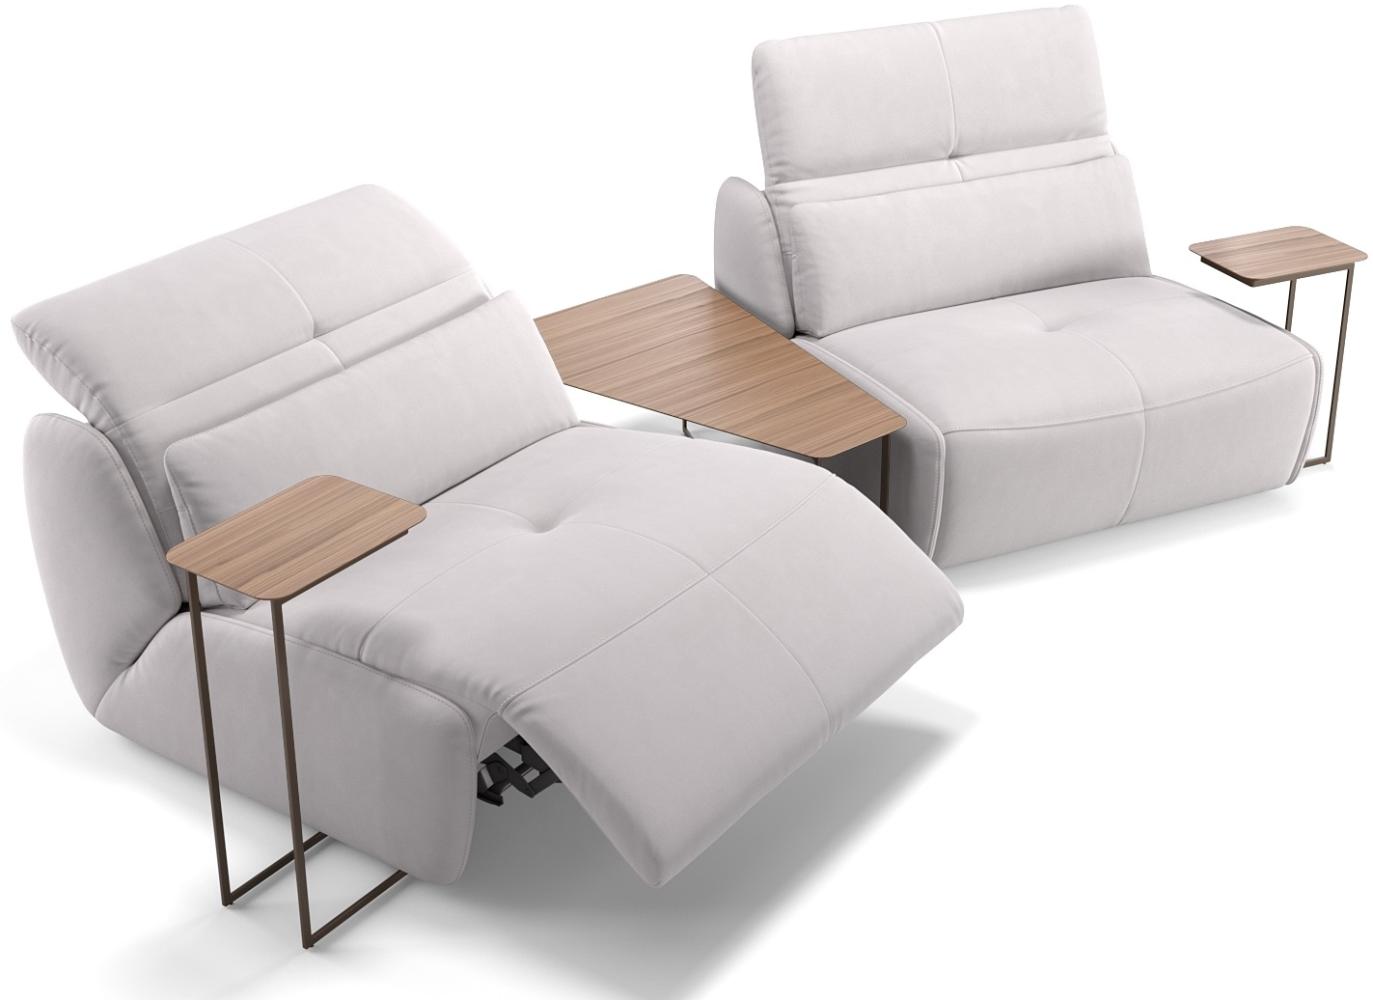 Sofanella Stoffcouch MODICA 2-Sitzer Stoffbezug Sofa in Weiß S: 228 Breite x 98 Tiefe Bild 1